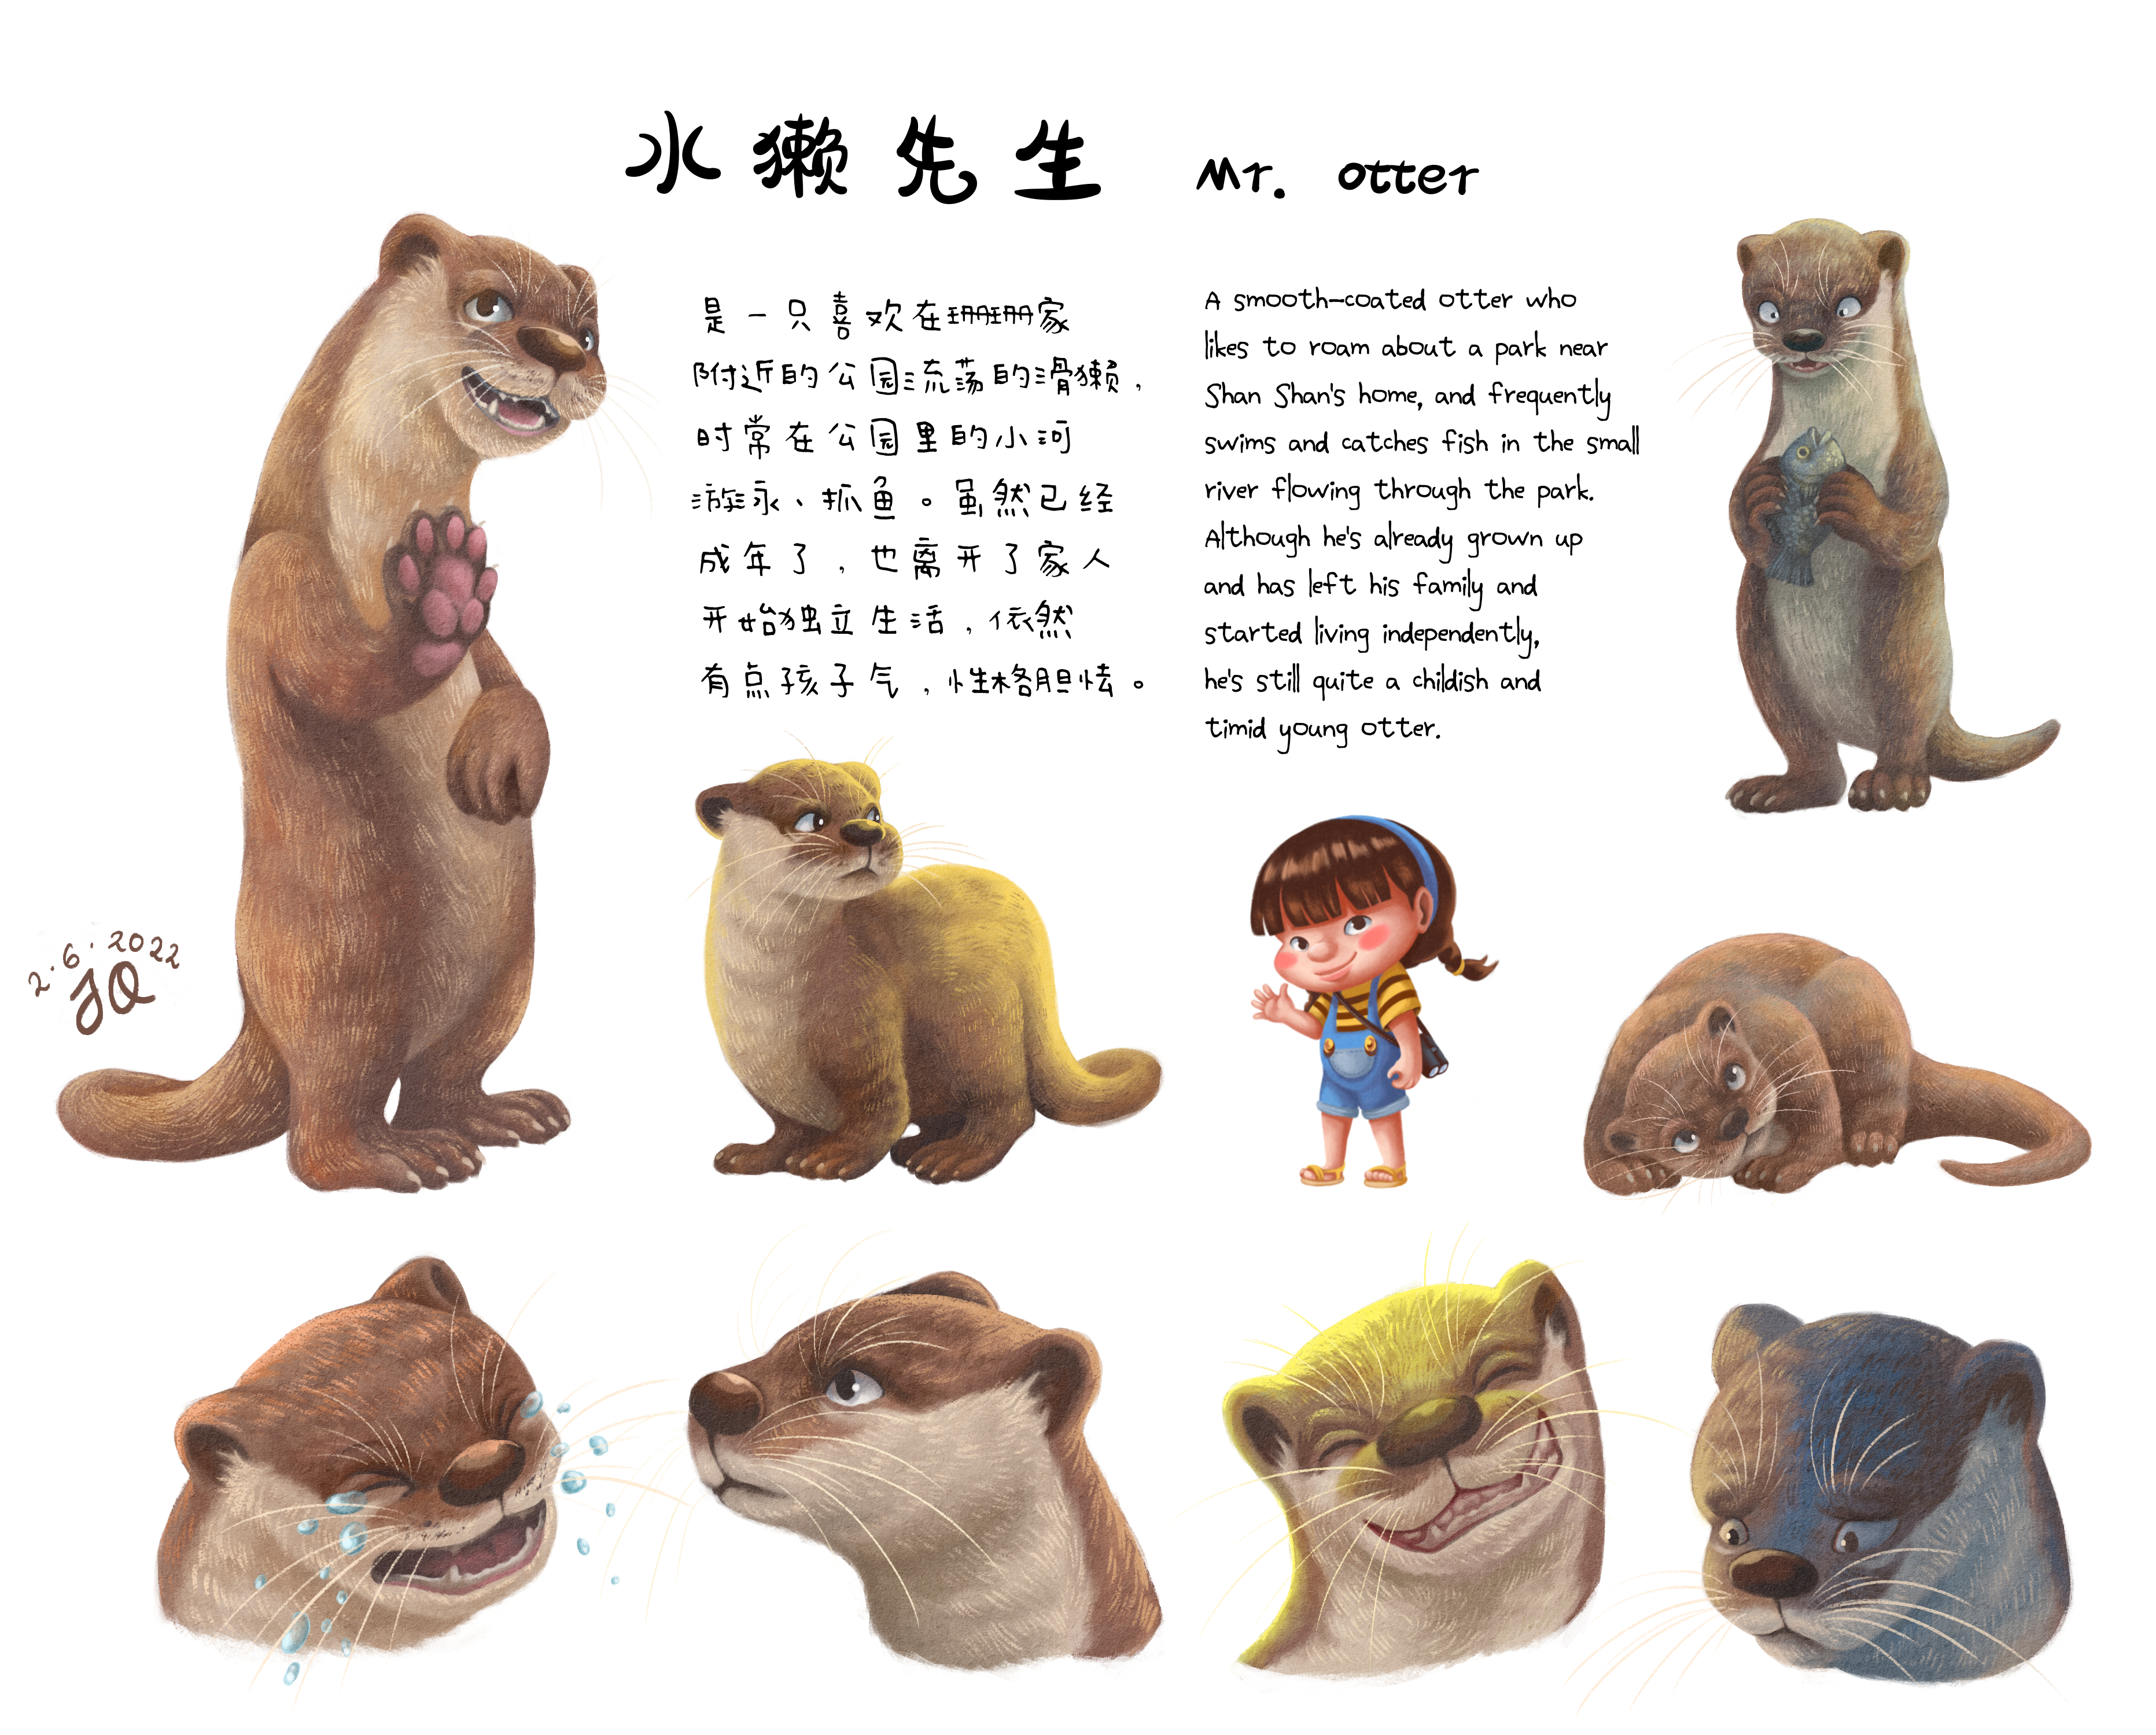 Otter Character Design  Finished Artworks  Krita Artists